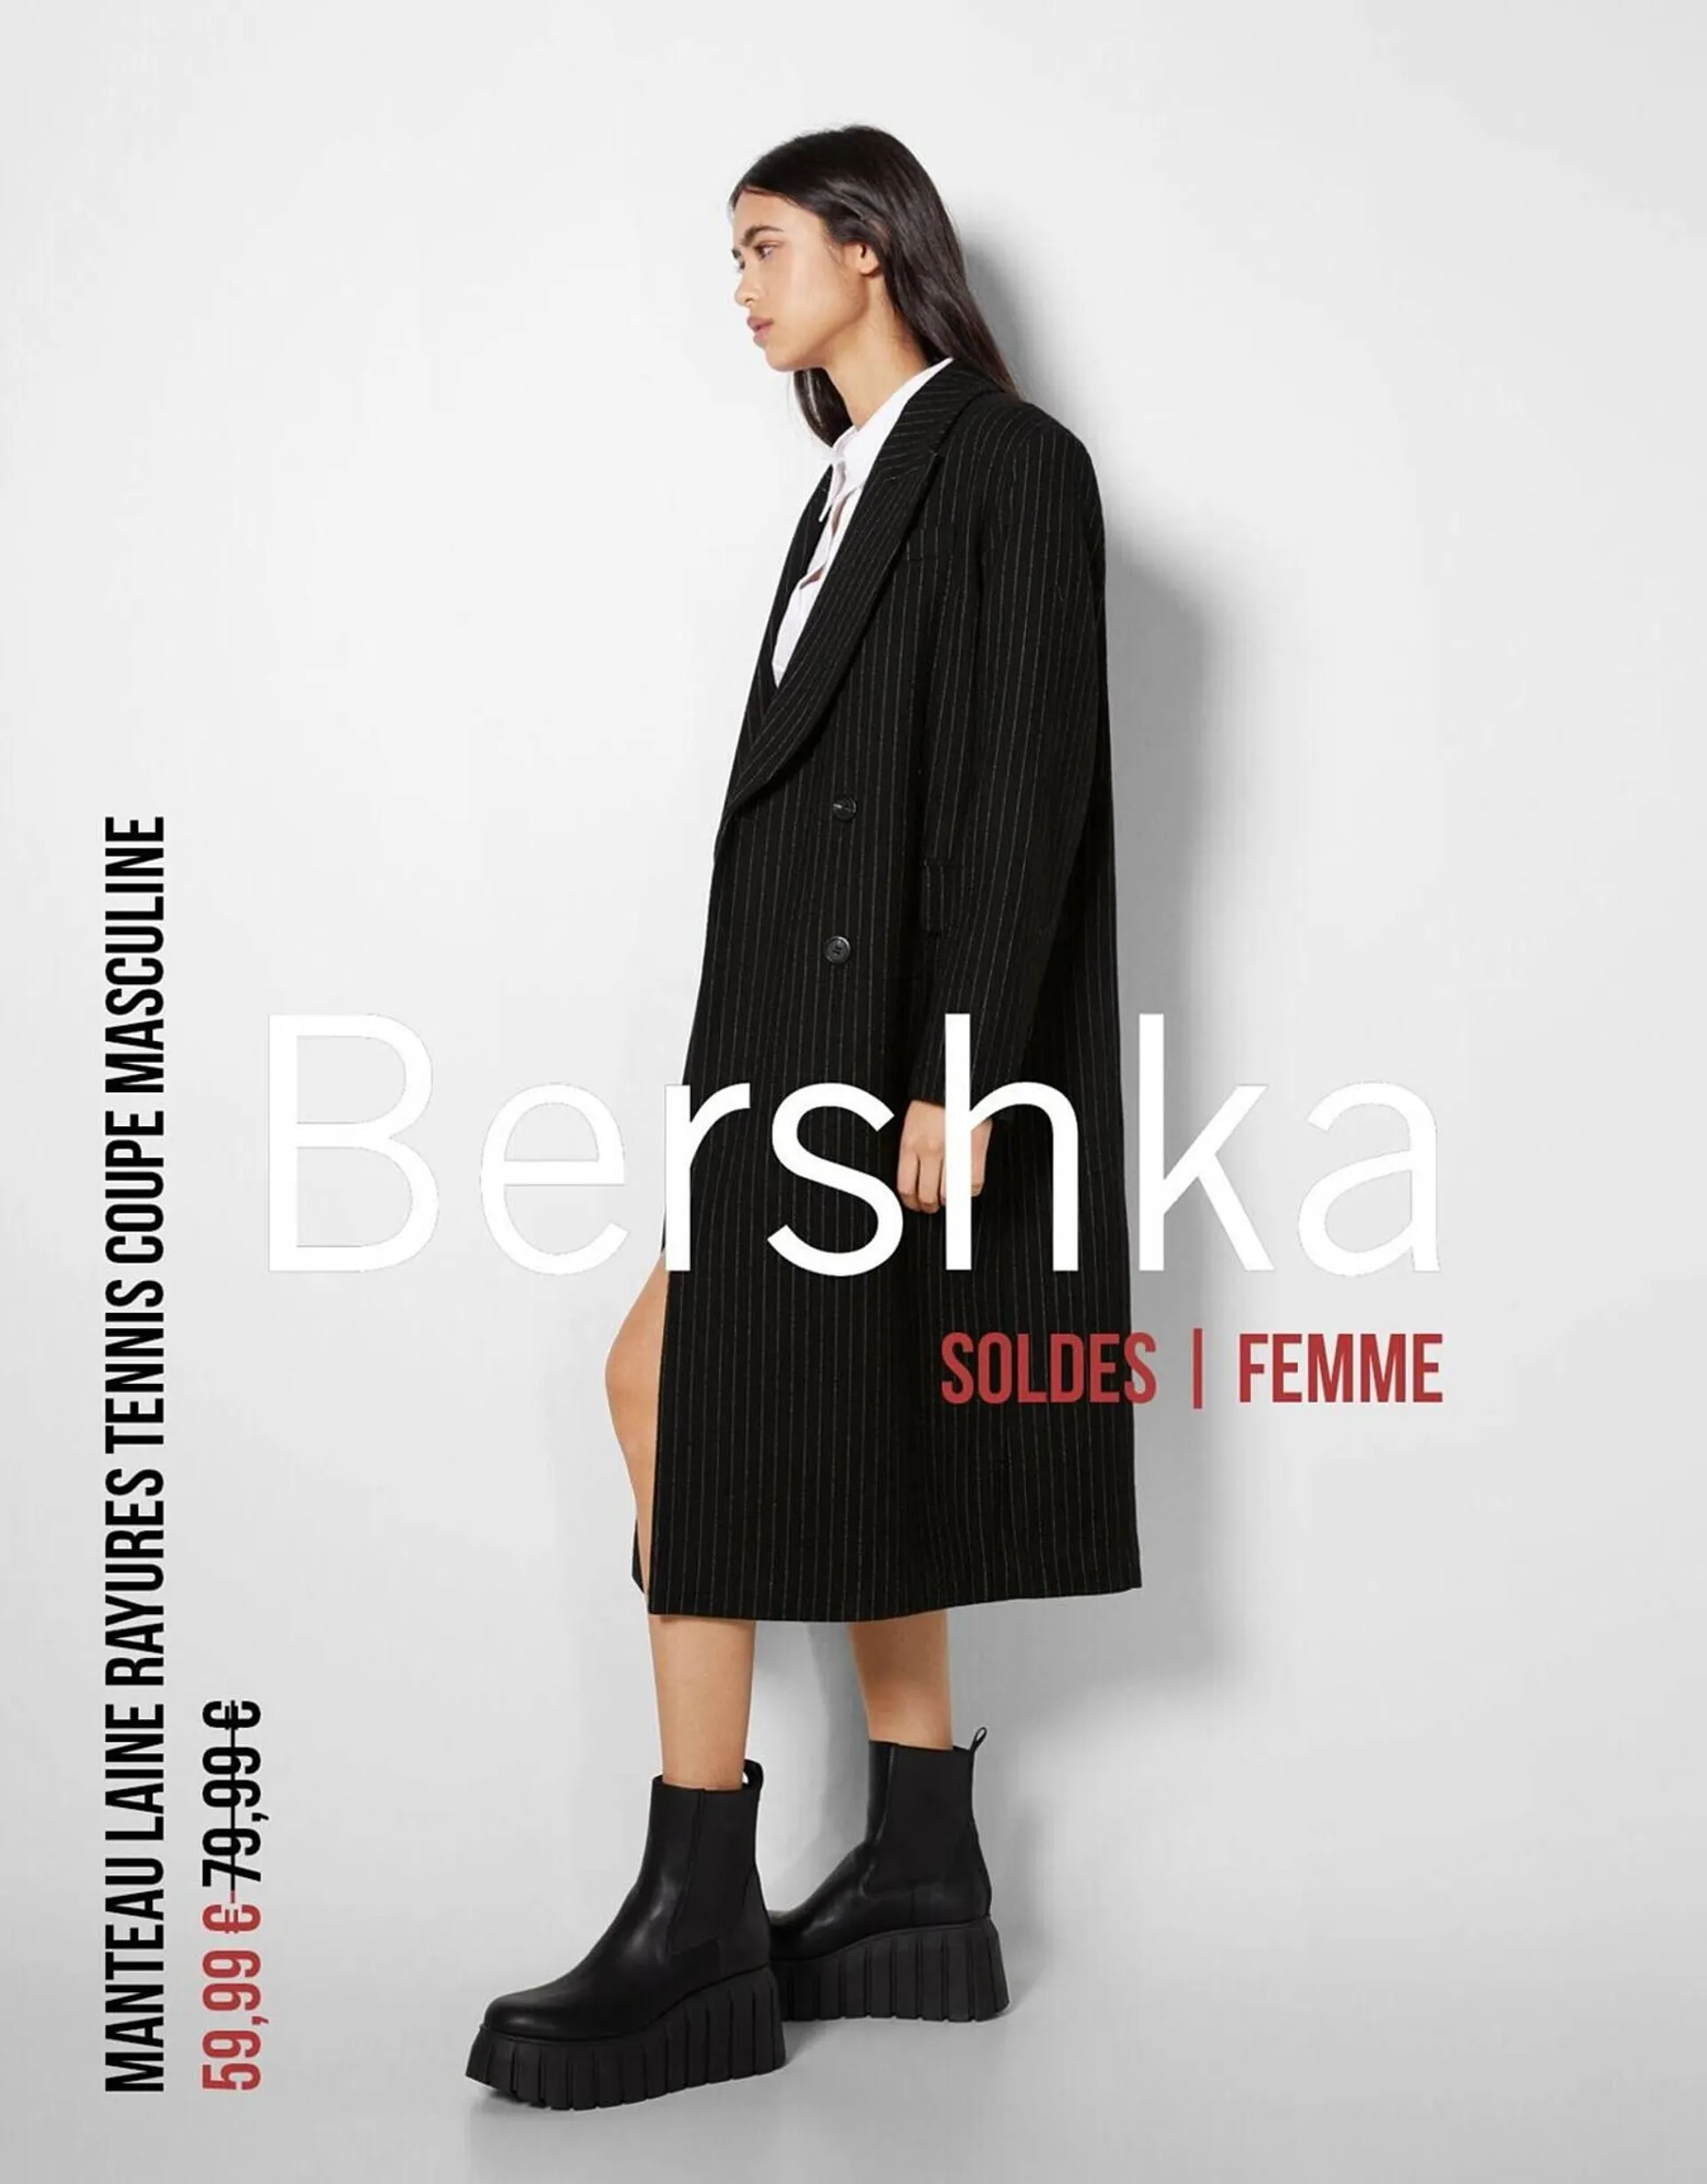 Catalogue Bershka - 1